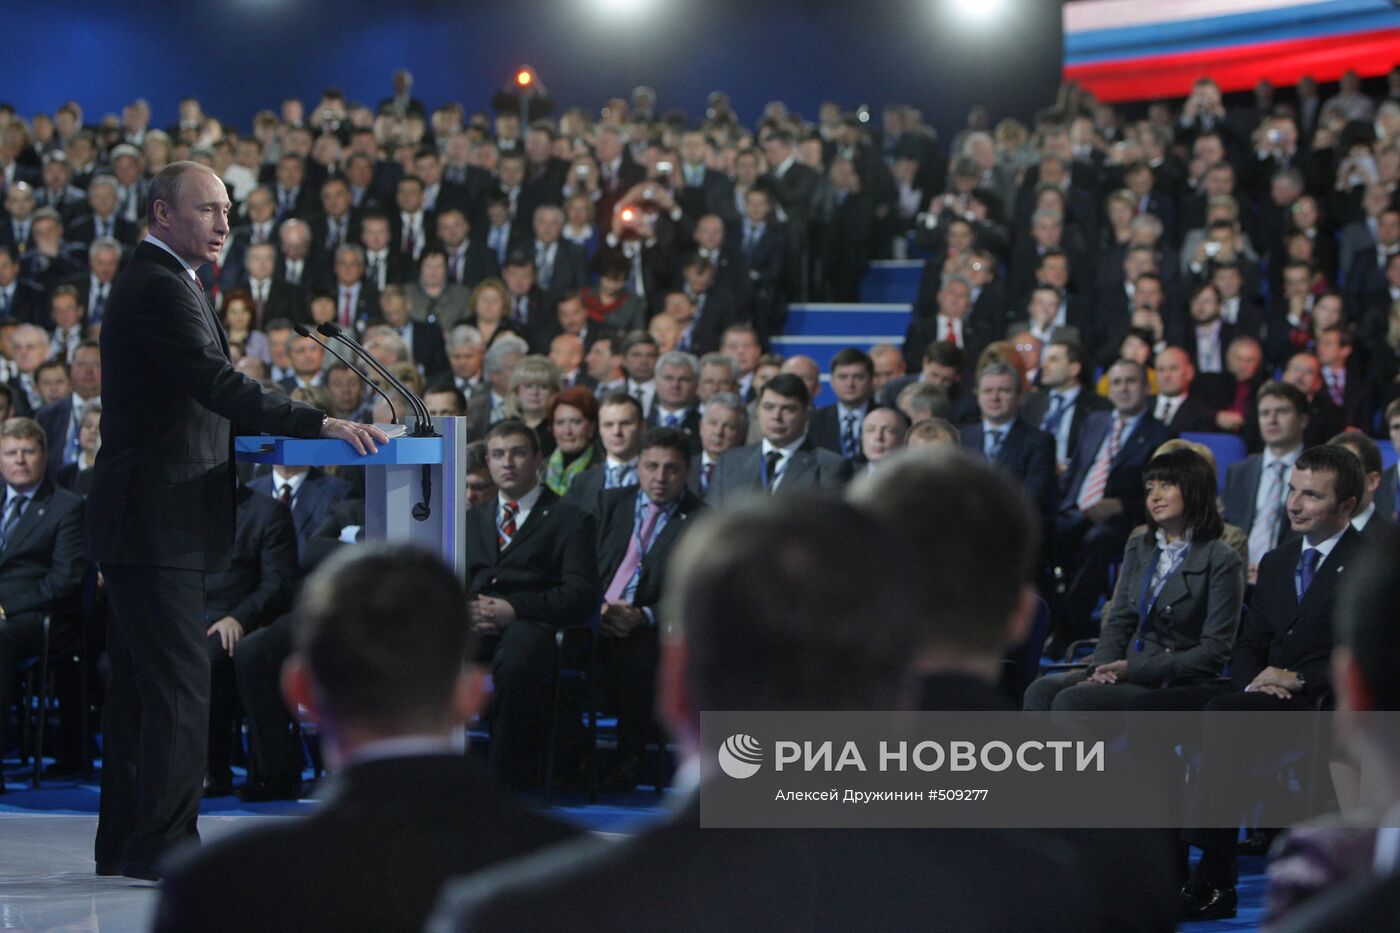 Выступление В. Путина на Съезде партии "Единая Россия"